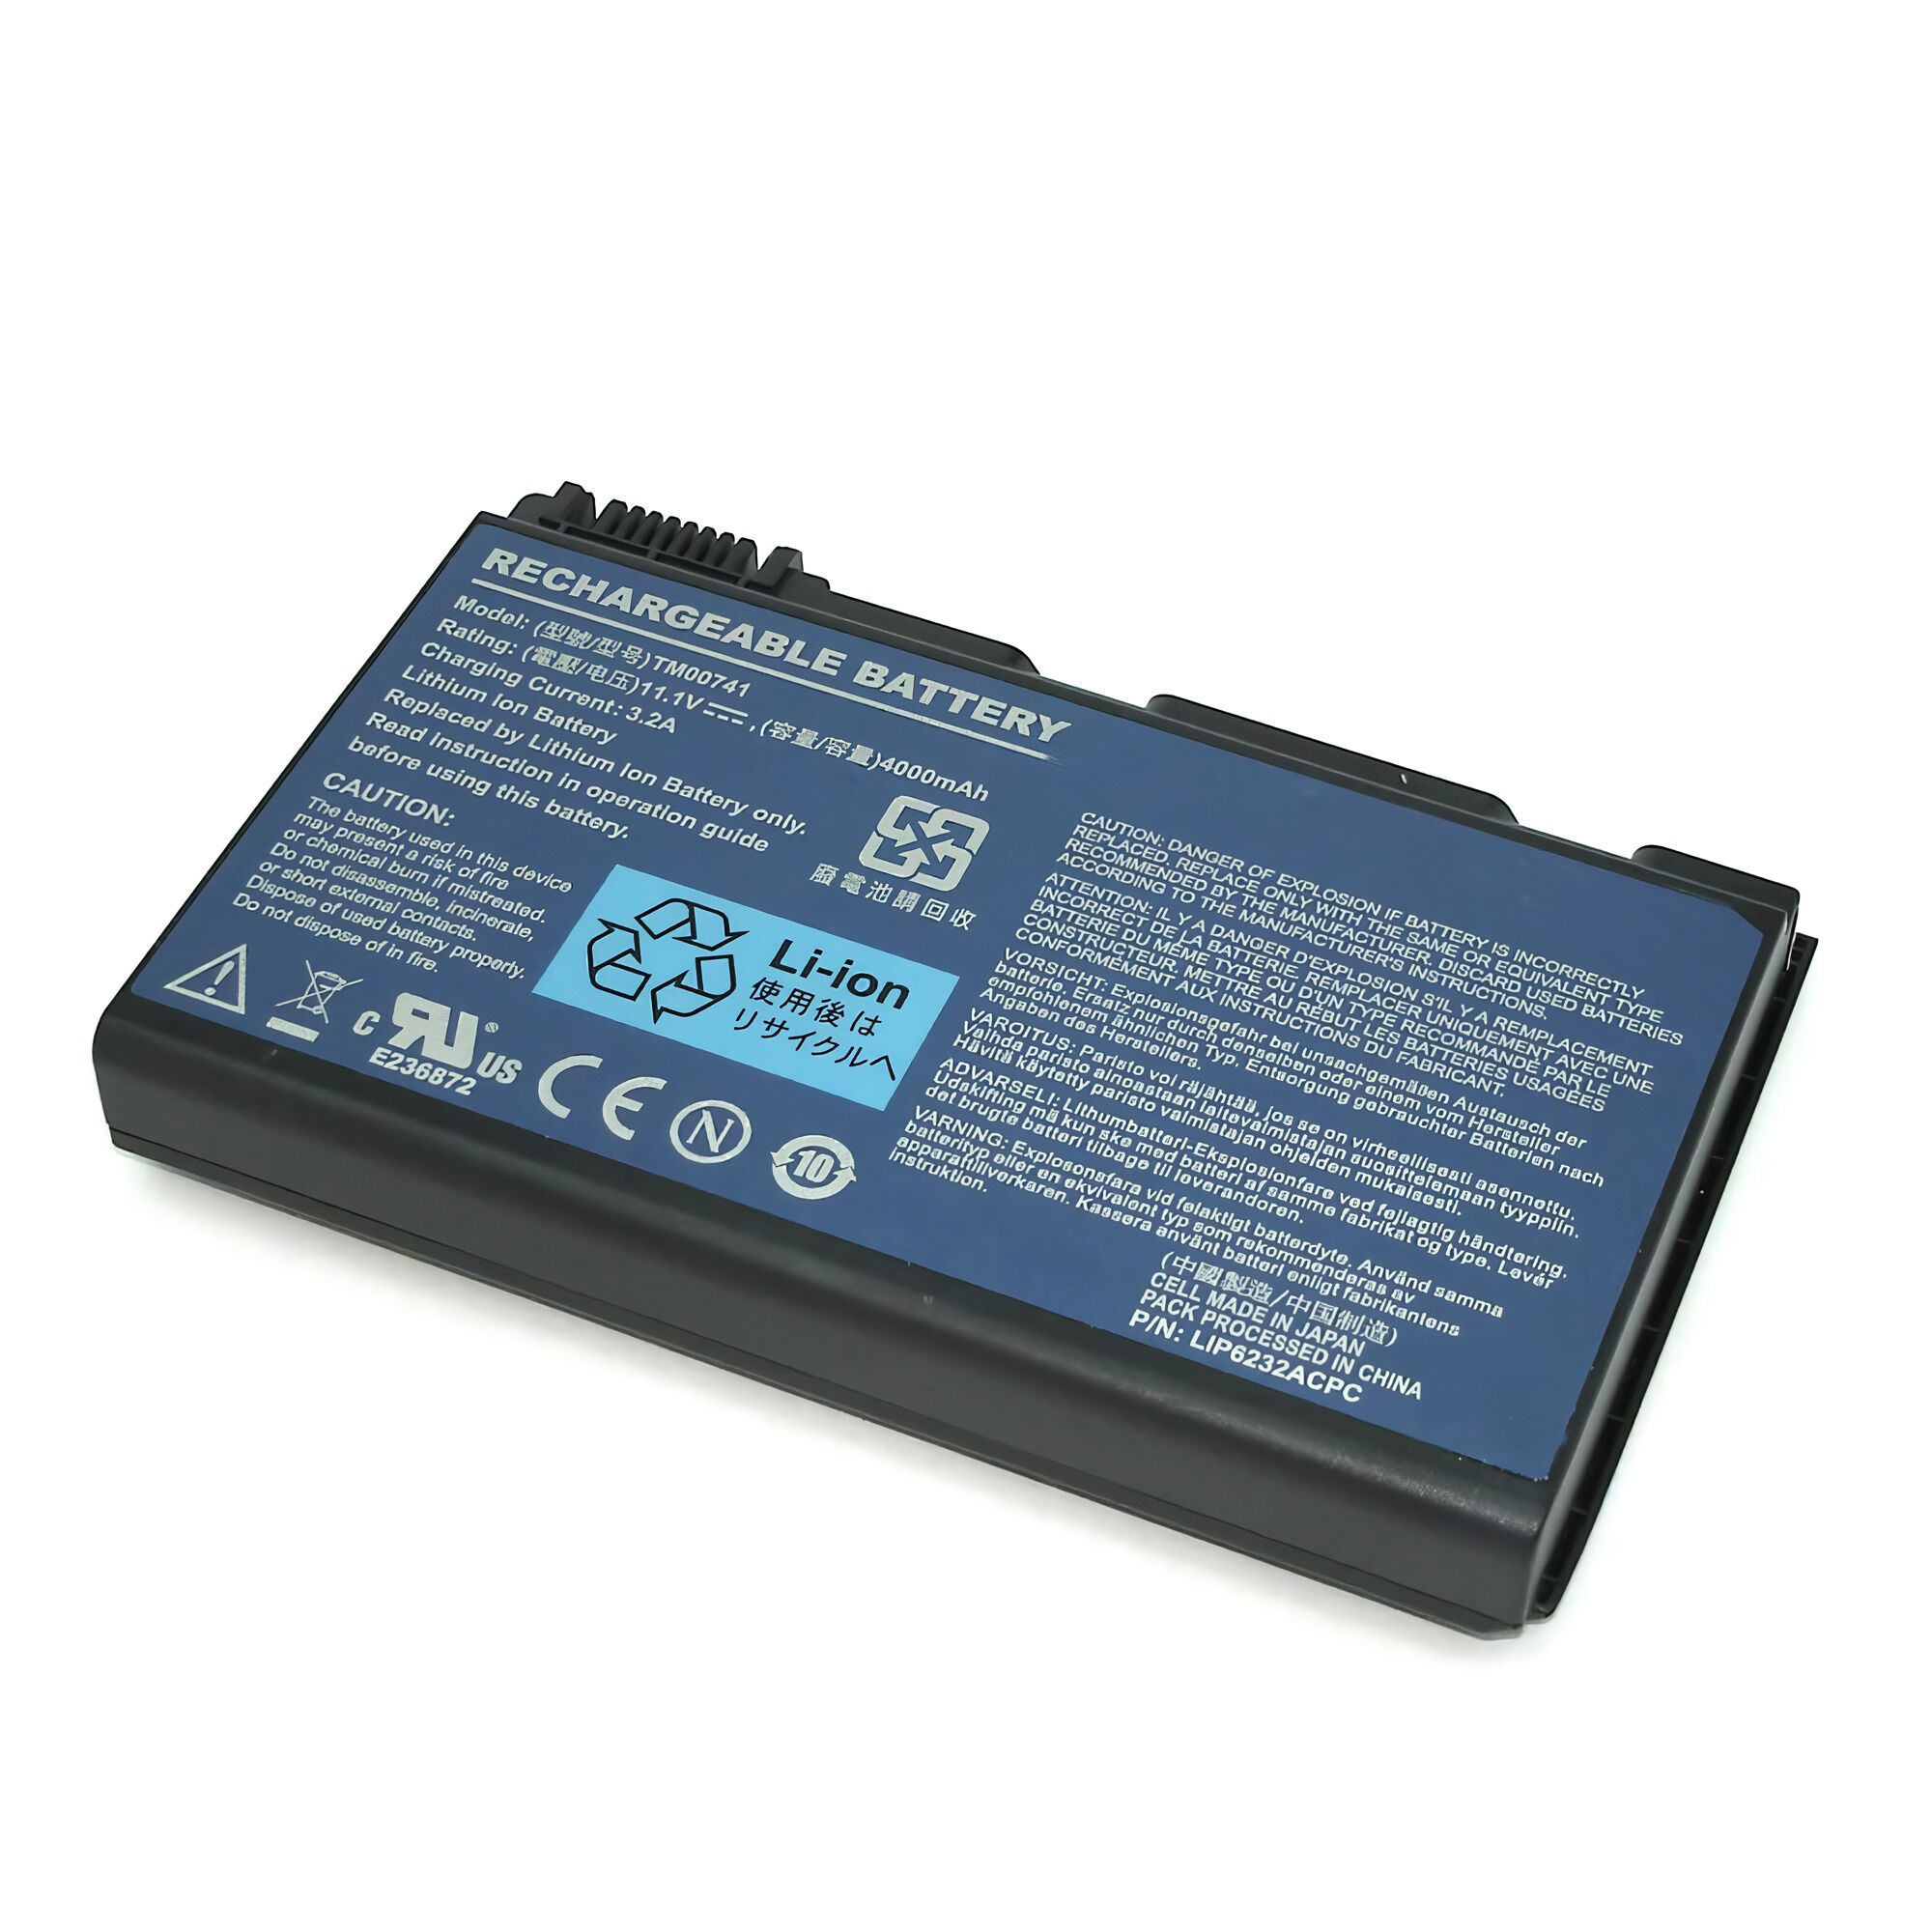 Аккумулятор для Acer Extensa 5220 5620 7220 7620 (14.8V 4400mAh) p/n: TM00742 TM00752 TM00772